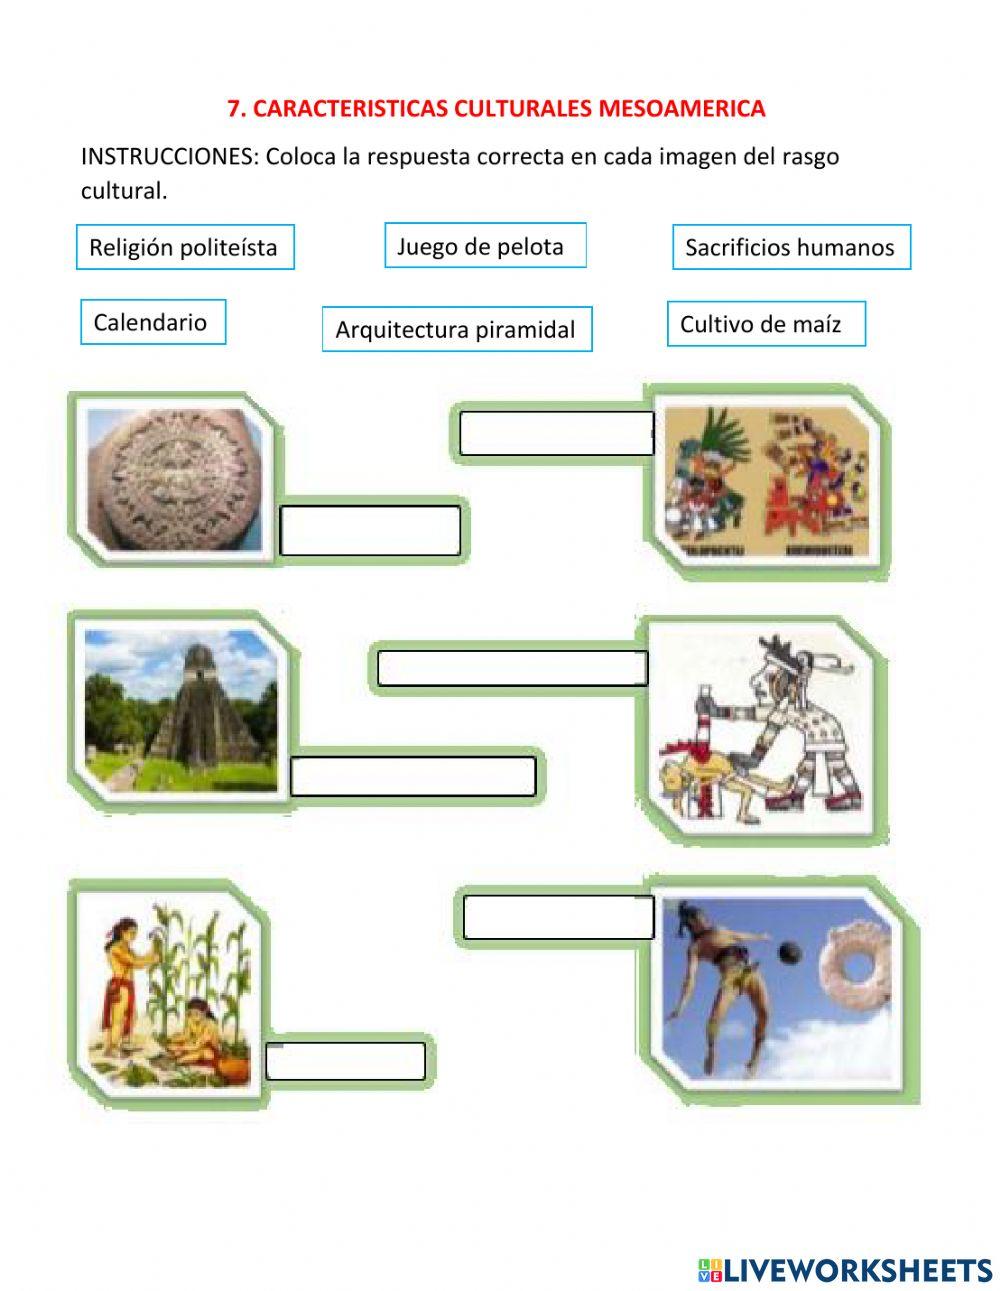 7. Características culturales Mesoamérica